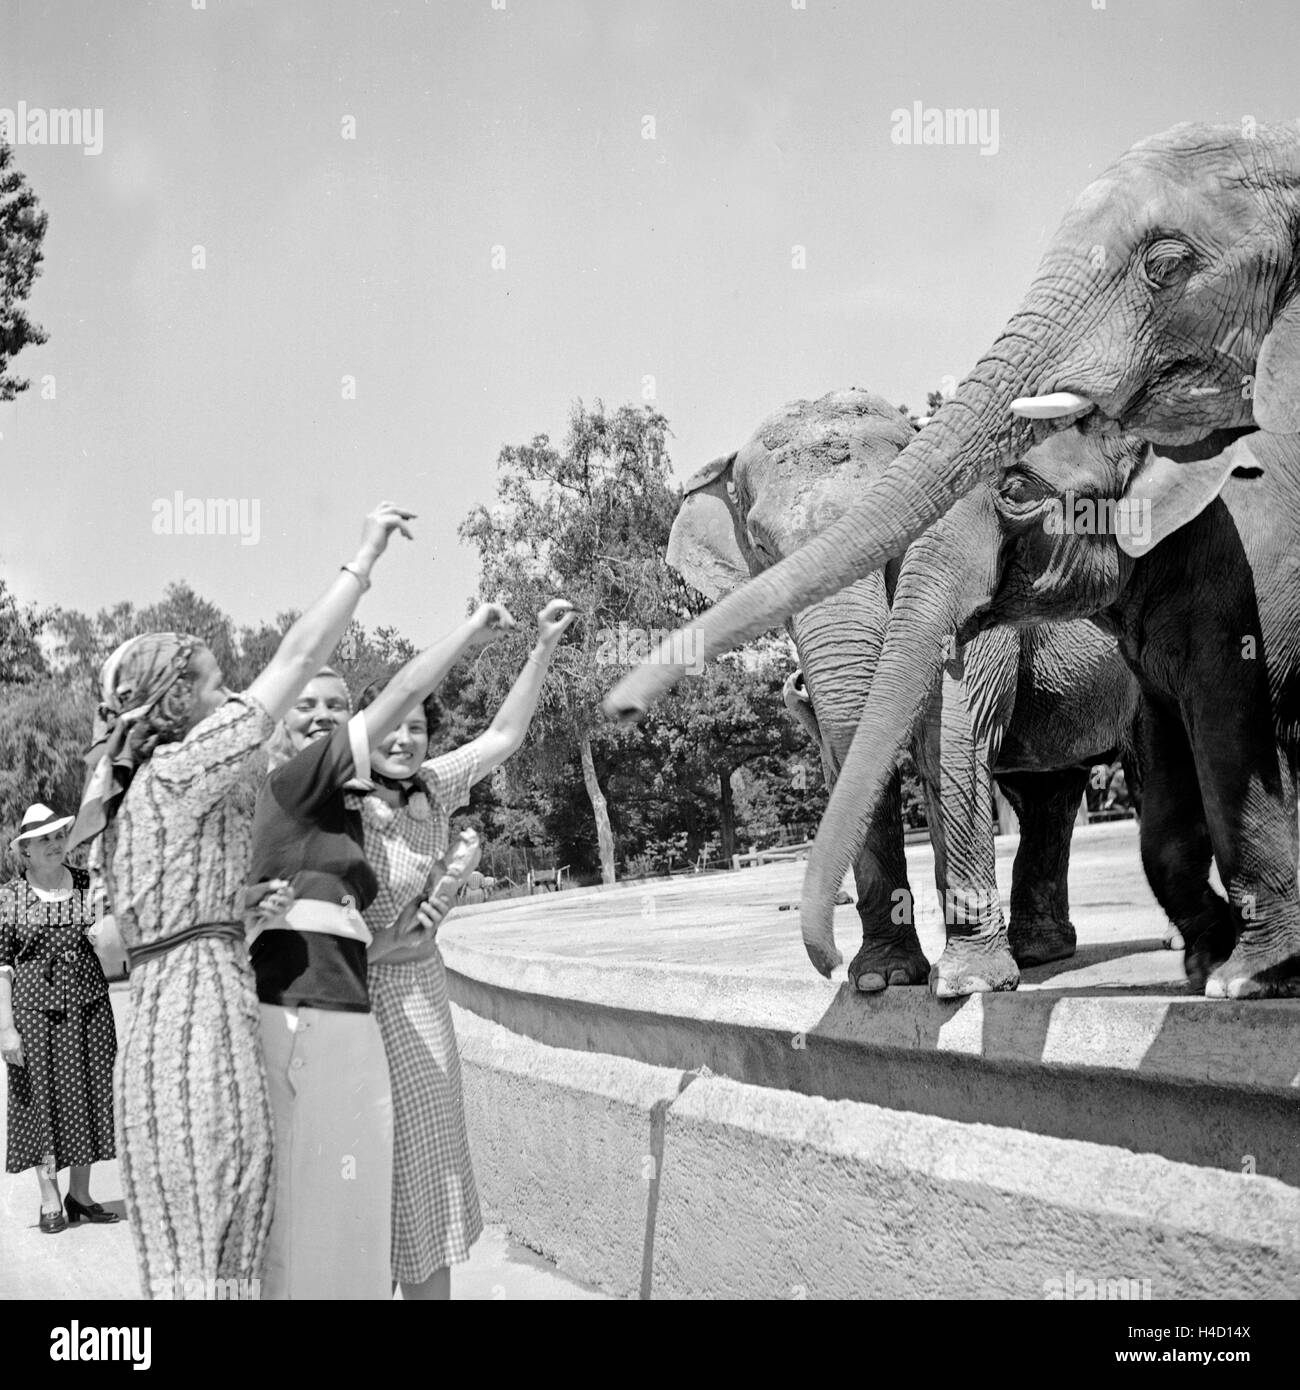 Drei junge Frauen verfüttern eine Erdnuß an Elefanten im Zoo, Deutschland 1930er Jahre. Three young women at the zoological gardens feeding peanuts to elephants, Germany 1930s. Stock Photo